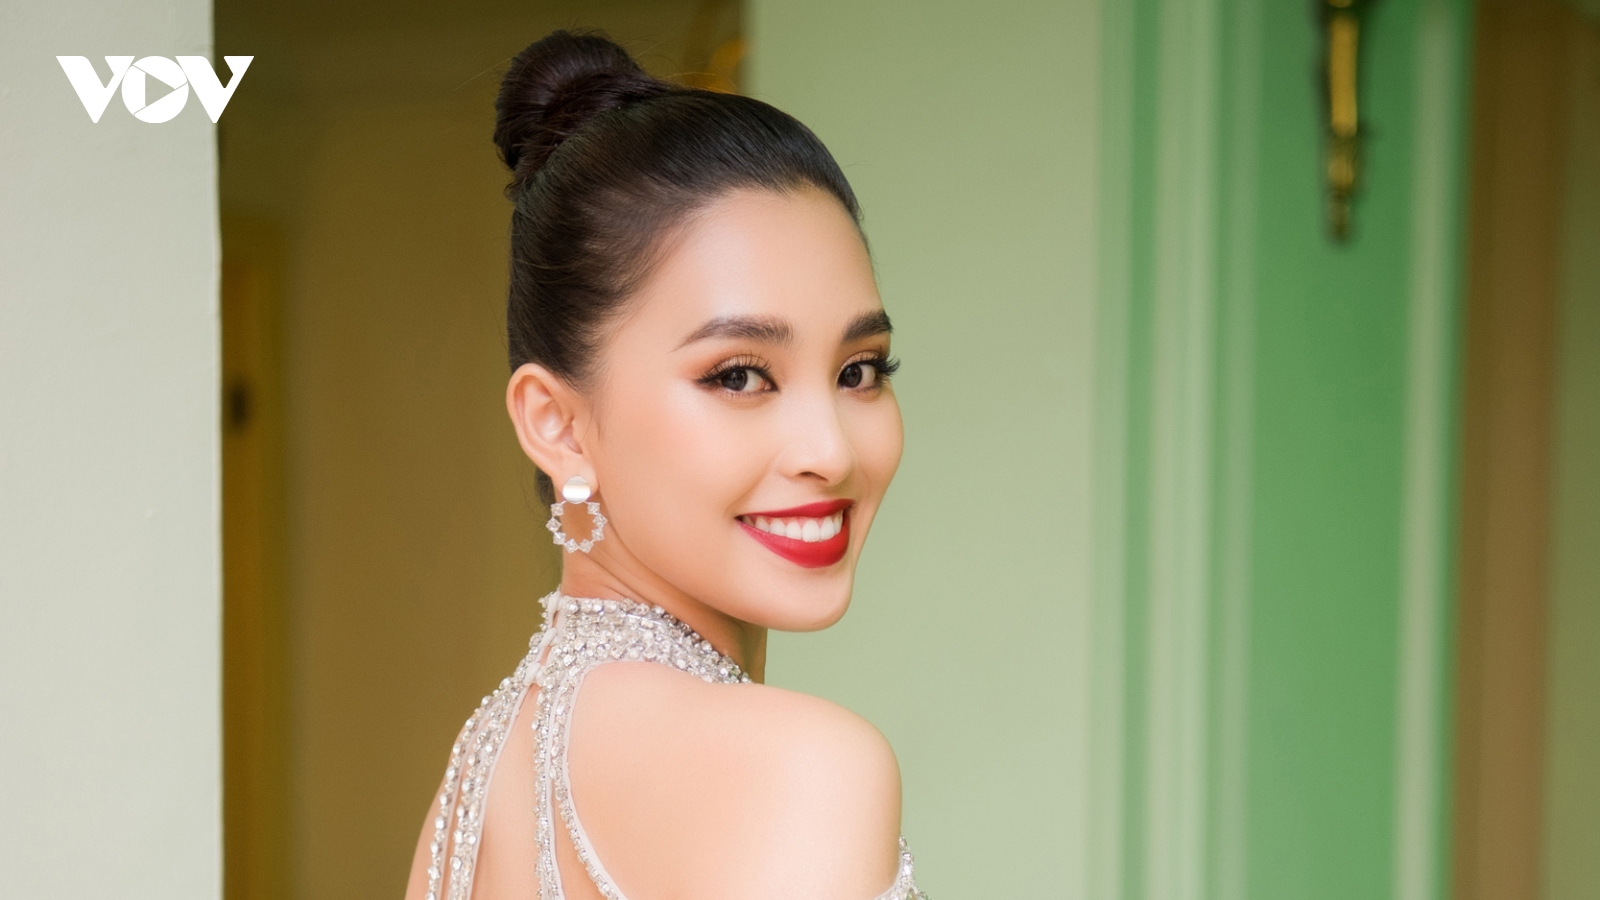 Hoa hậu Tiểu Vy: "Tôi không nghĩ bản thân sẽ bị lu mờ khi Hoa hậu mới lên ngôi"